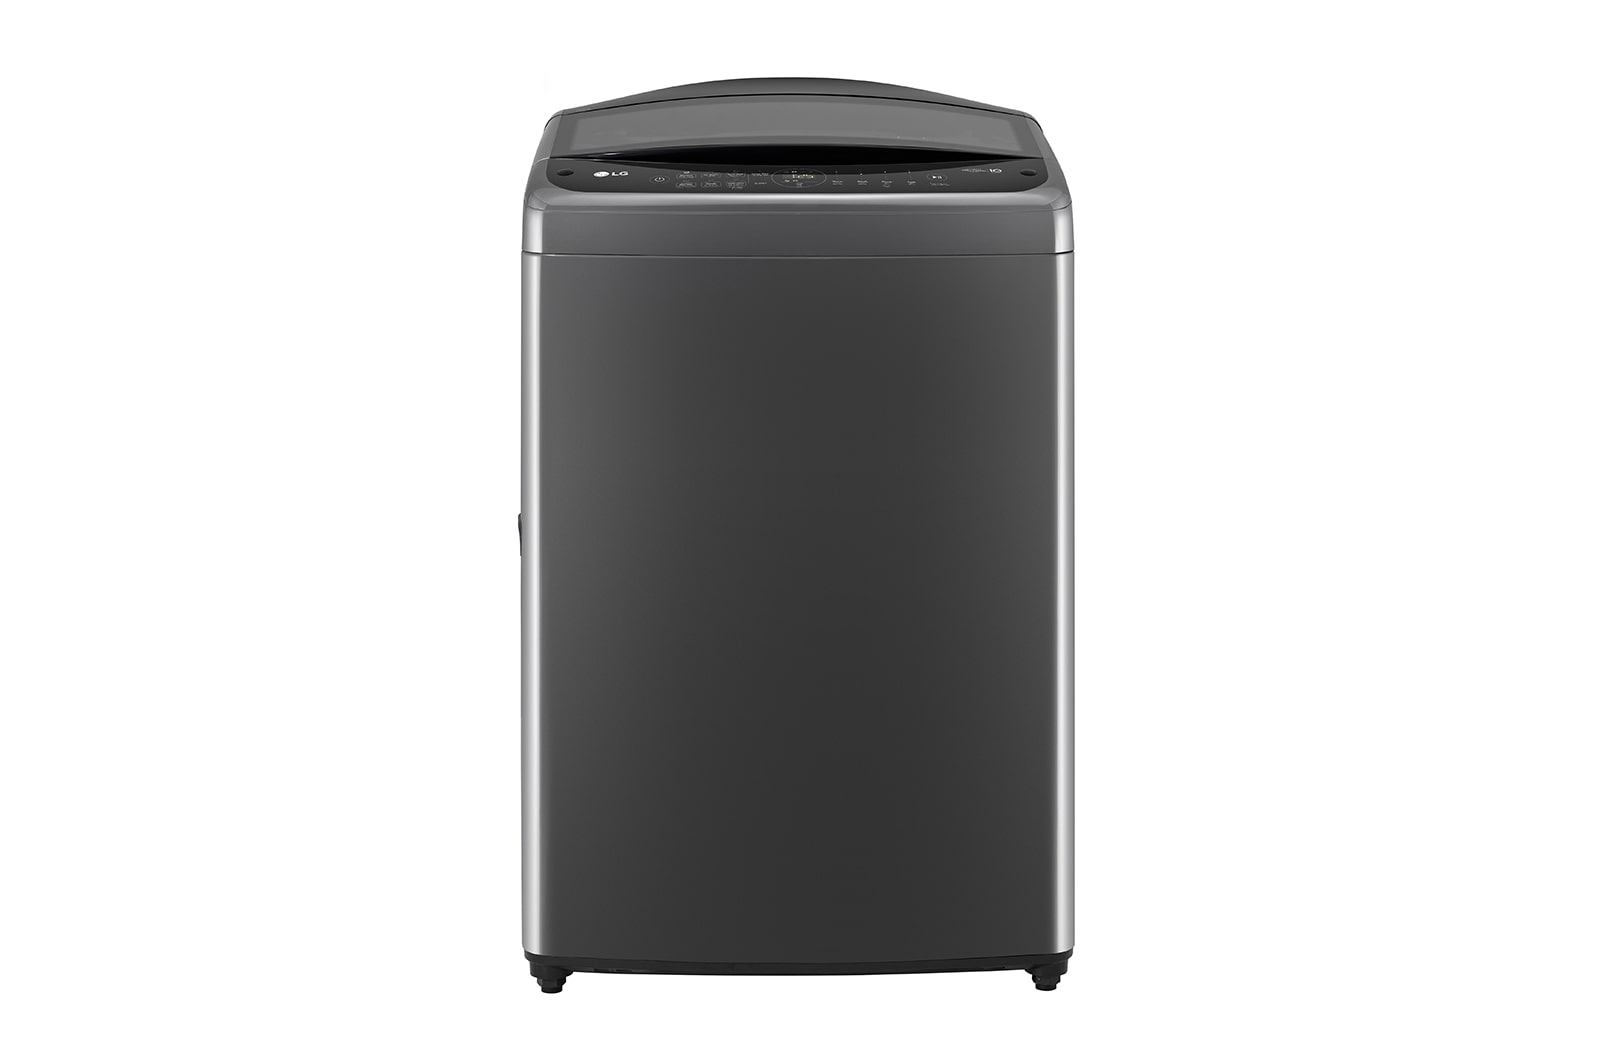 LG Máy giặt lồng đứng LG AI DD™ Inverter 16kg màu đen TV2516DV3B, TV2516DV3B